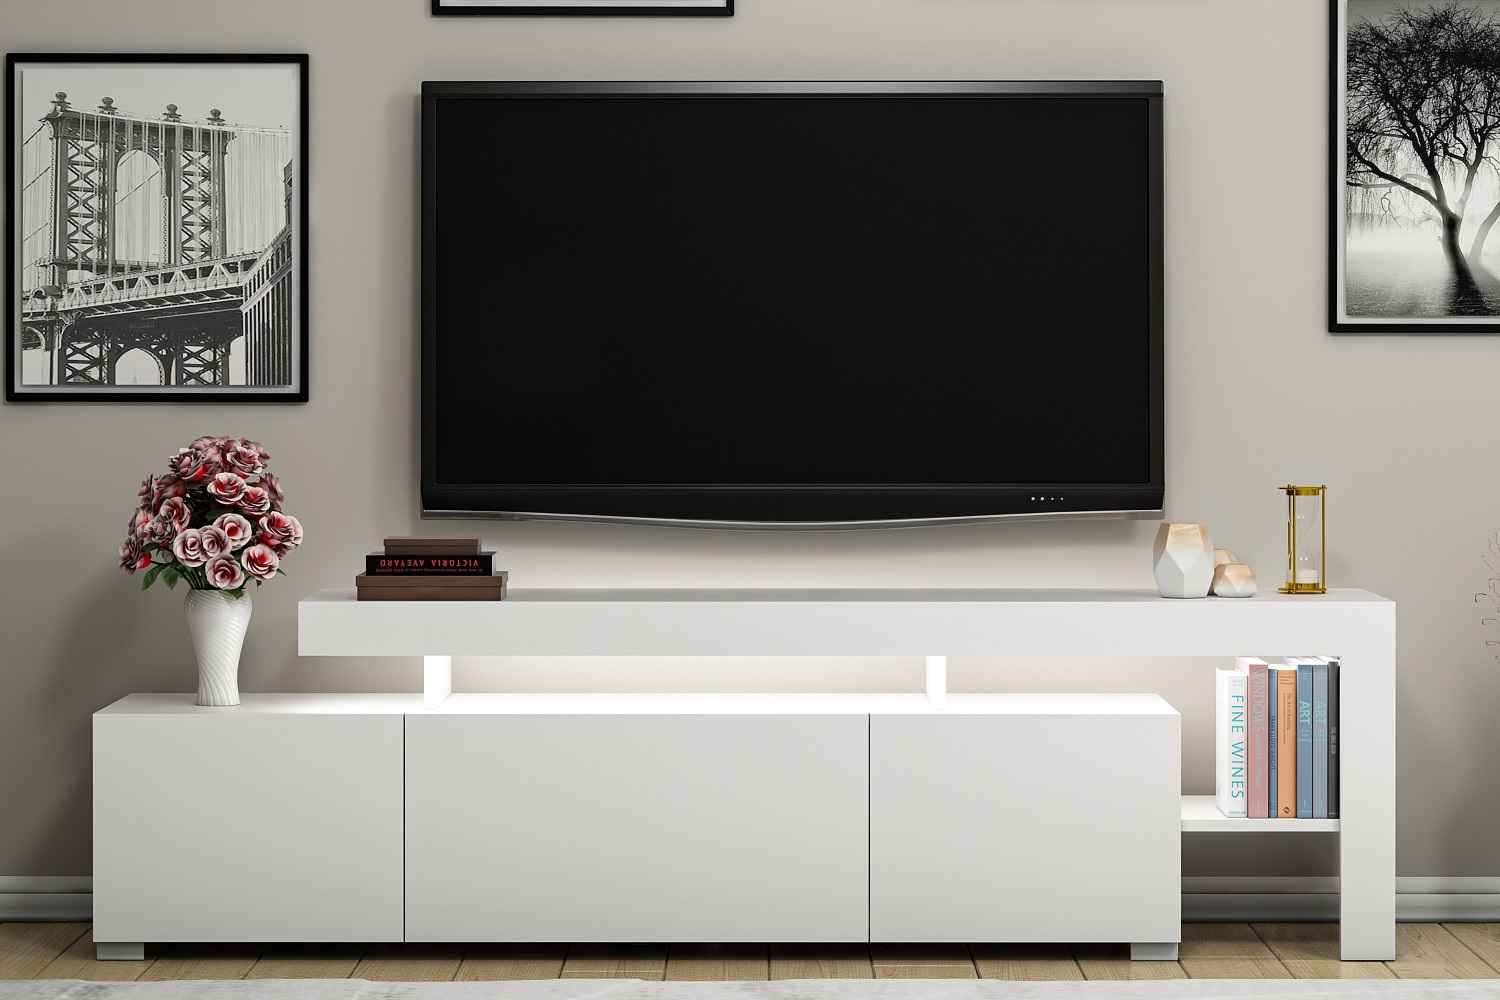 Sofahouse Designový TV stolek Calissa 192 cm bílý - II. tŕída